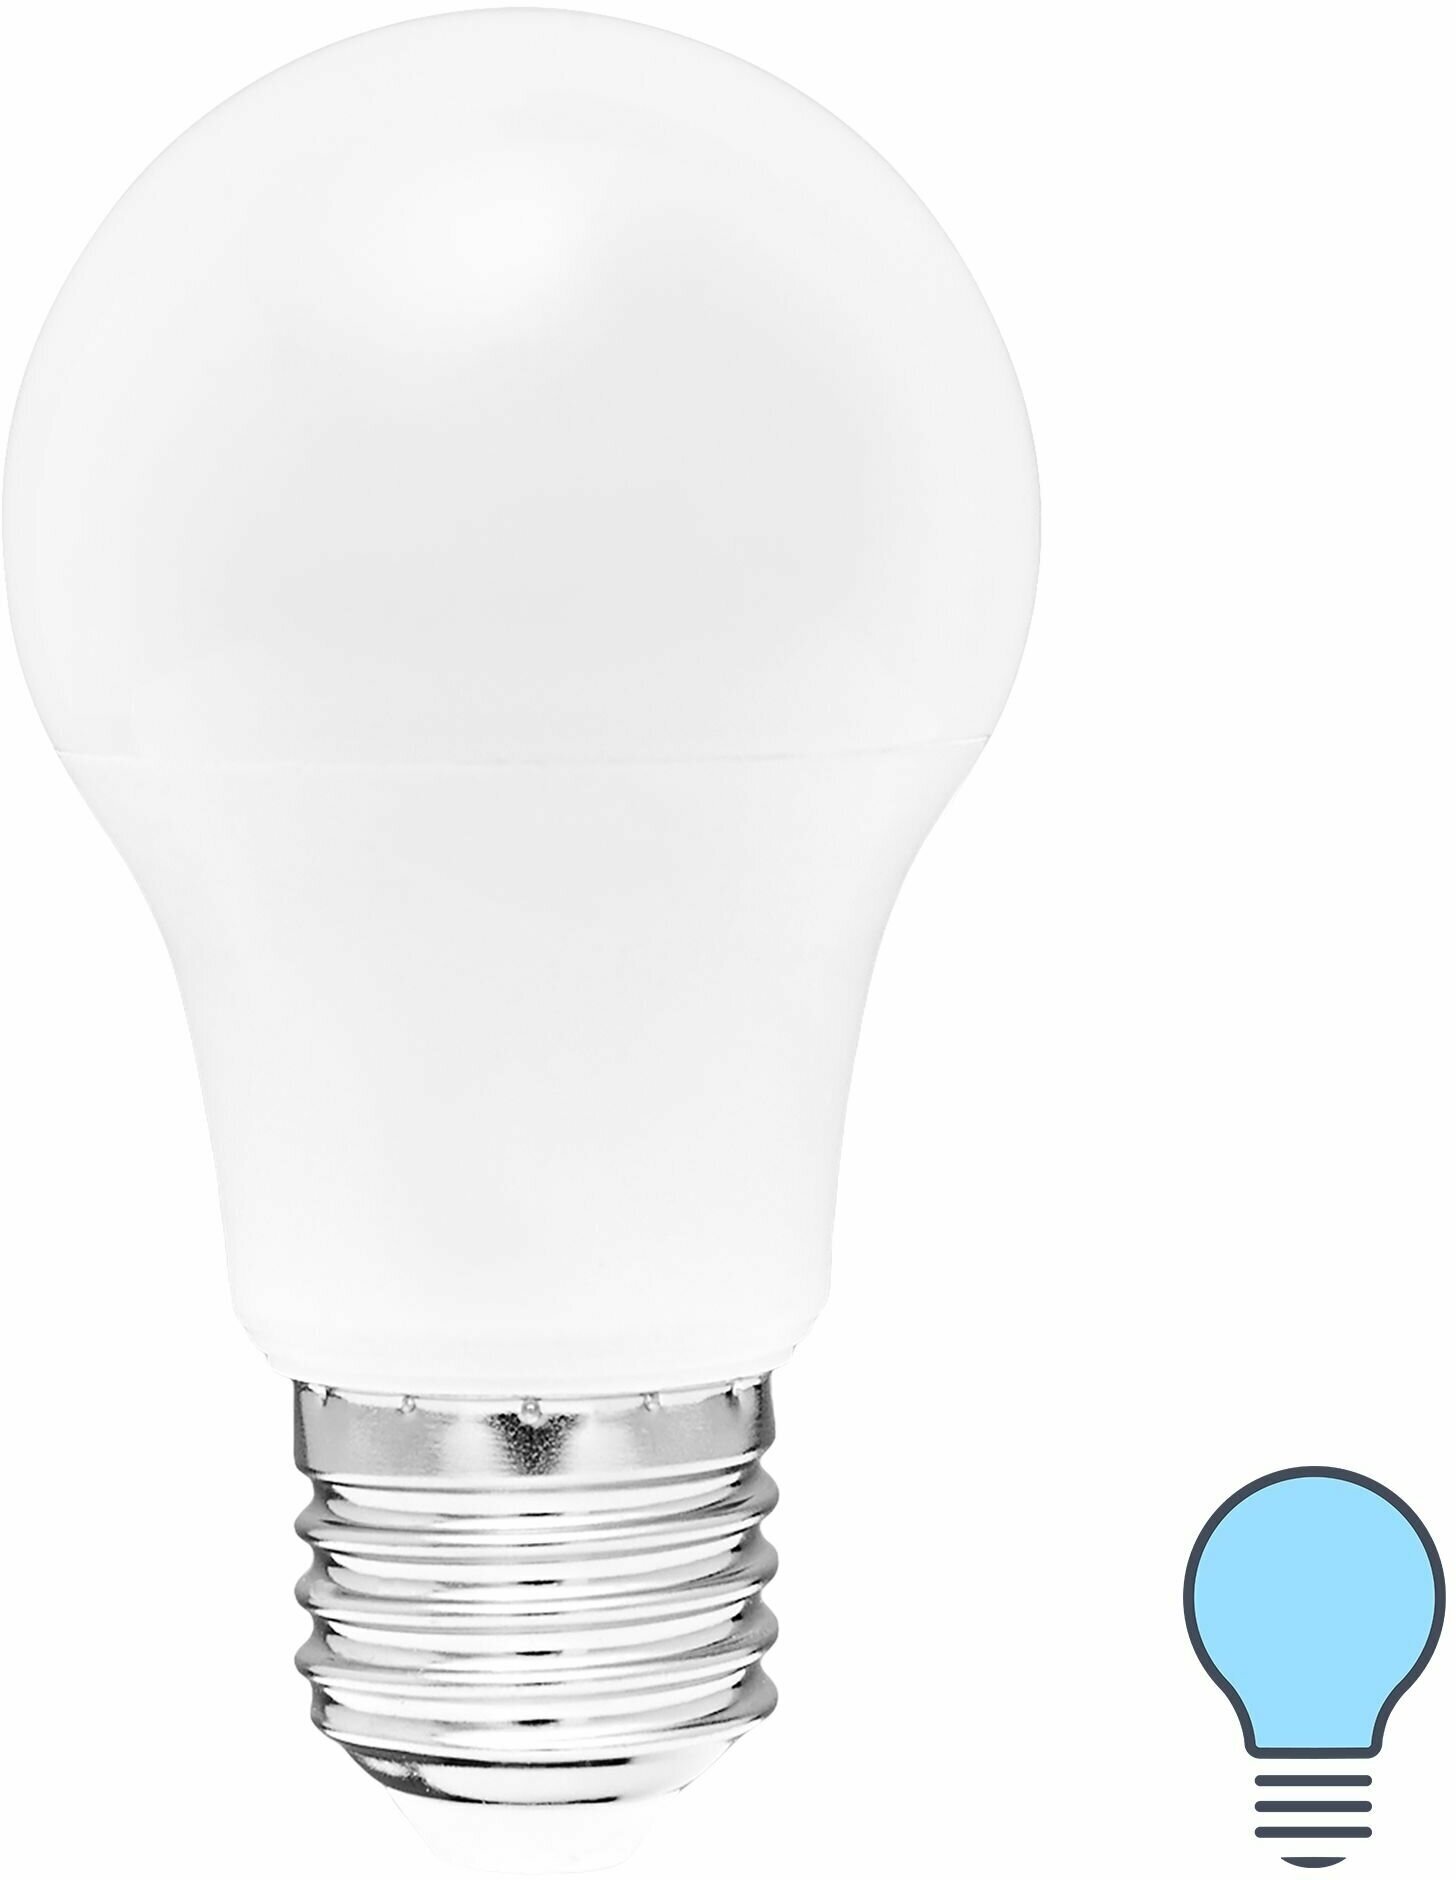 Лампа светодиодная Volpe E27 220-240 В 7 Вт груша матовая 600 лм холодный белый свет